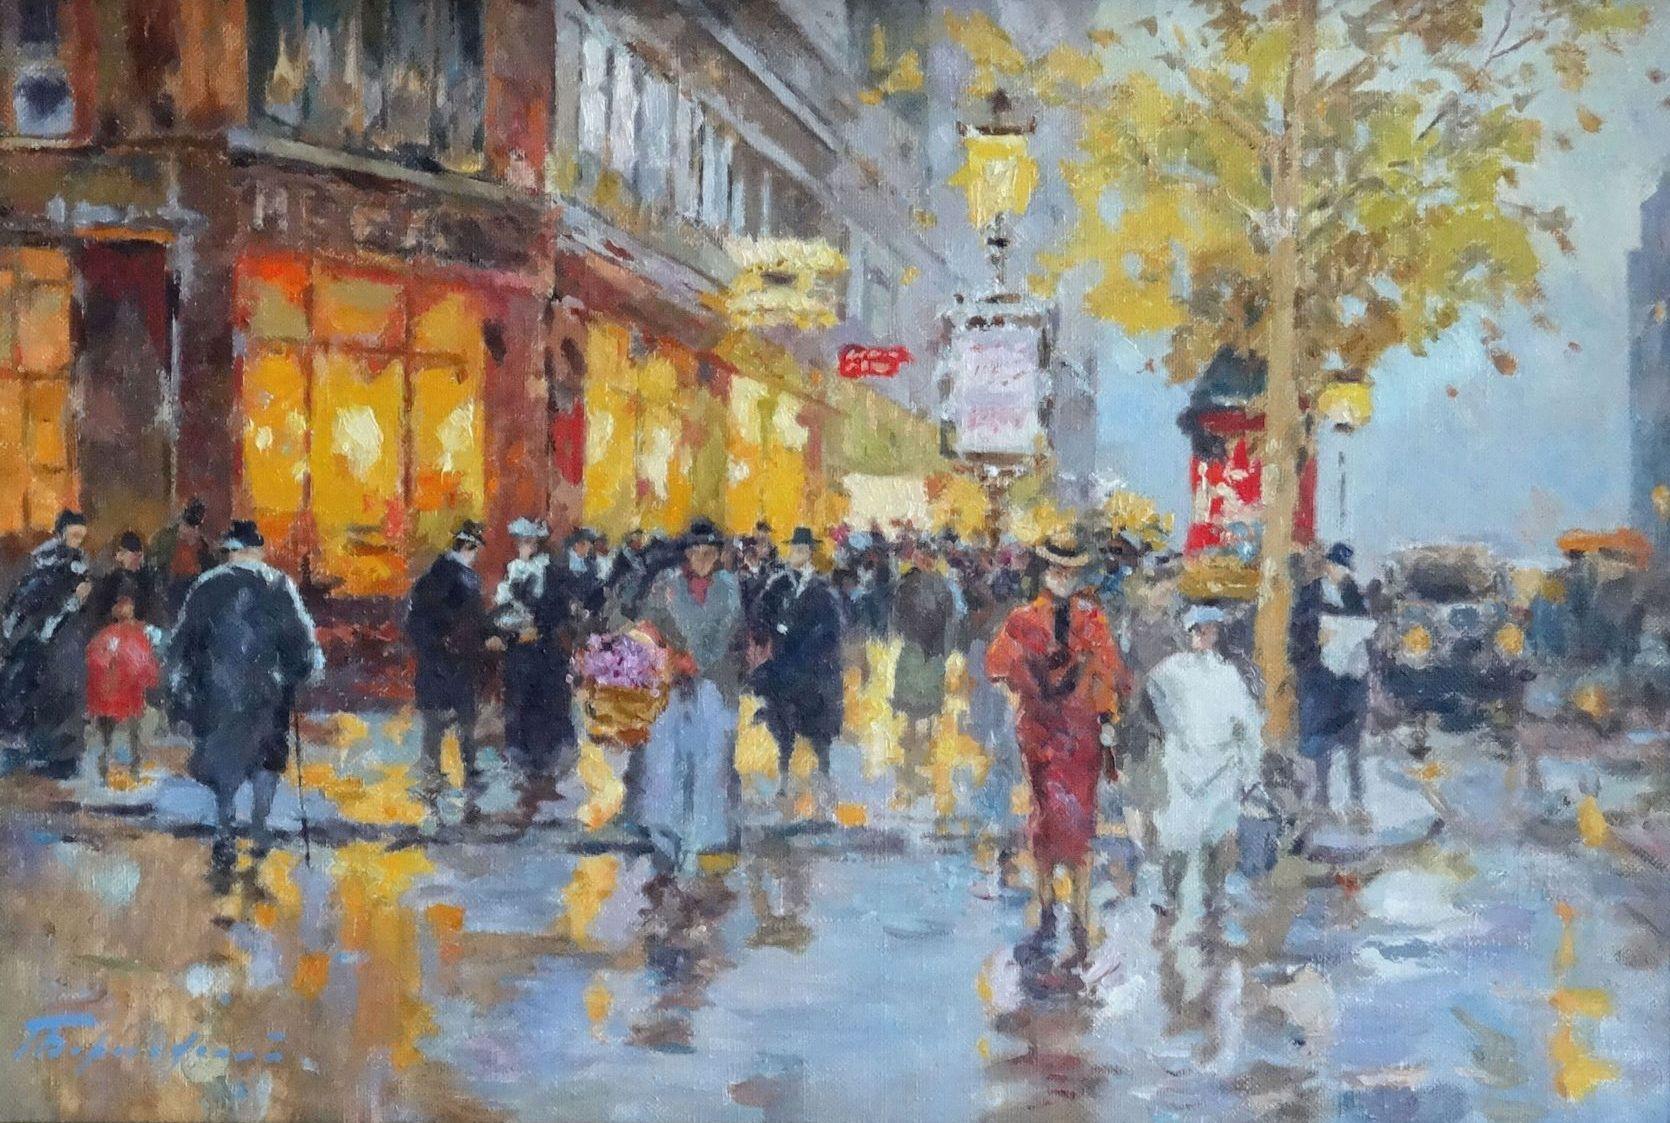 After the rain. Paris. Oil on canvas, 54,5x80 cm